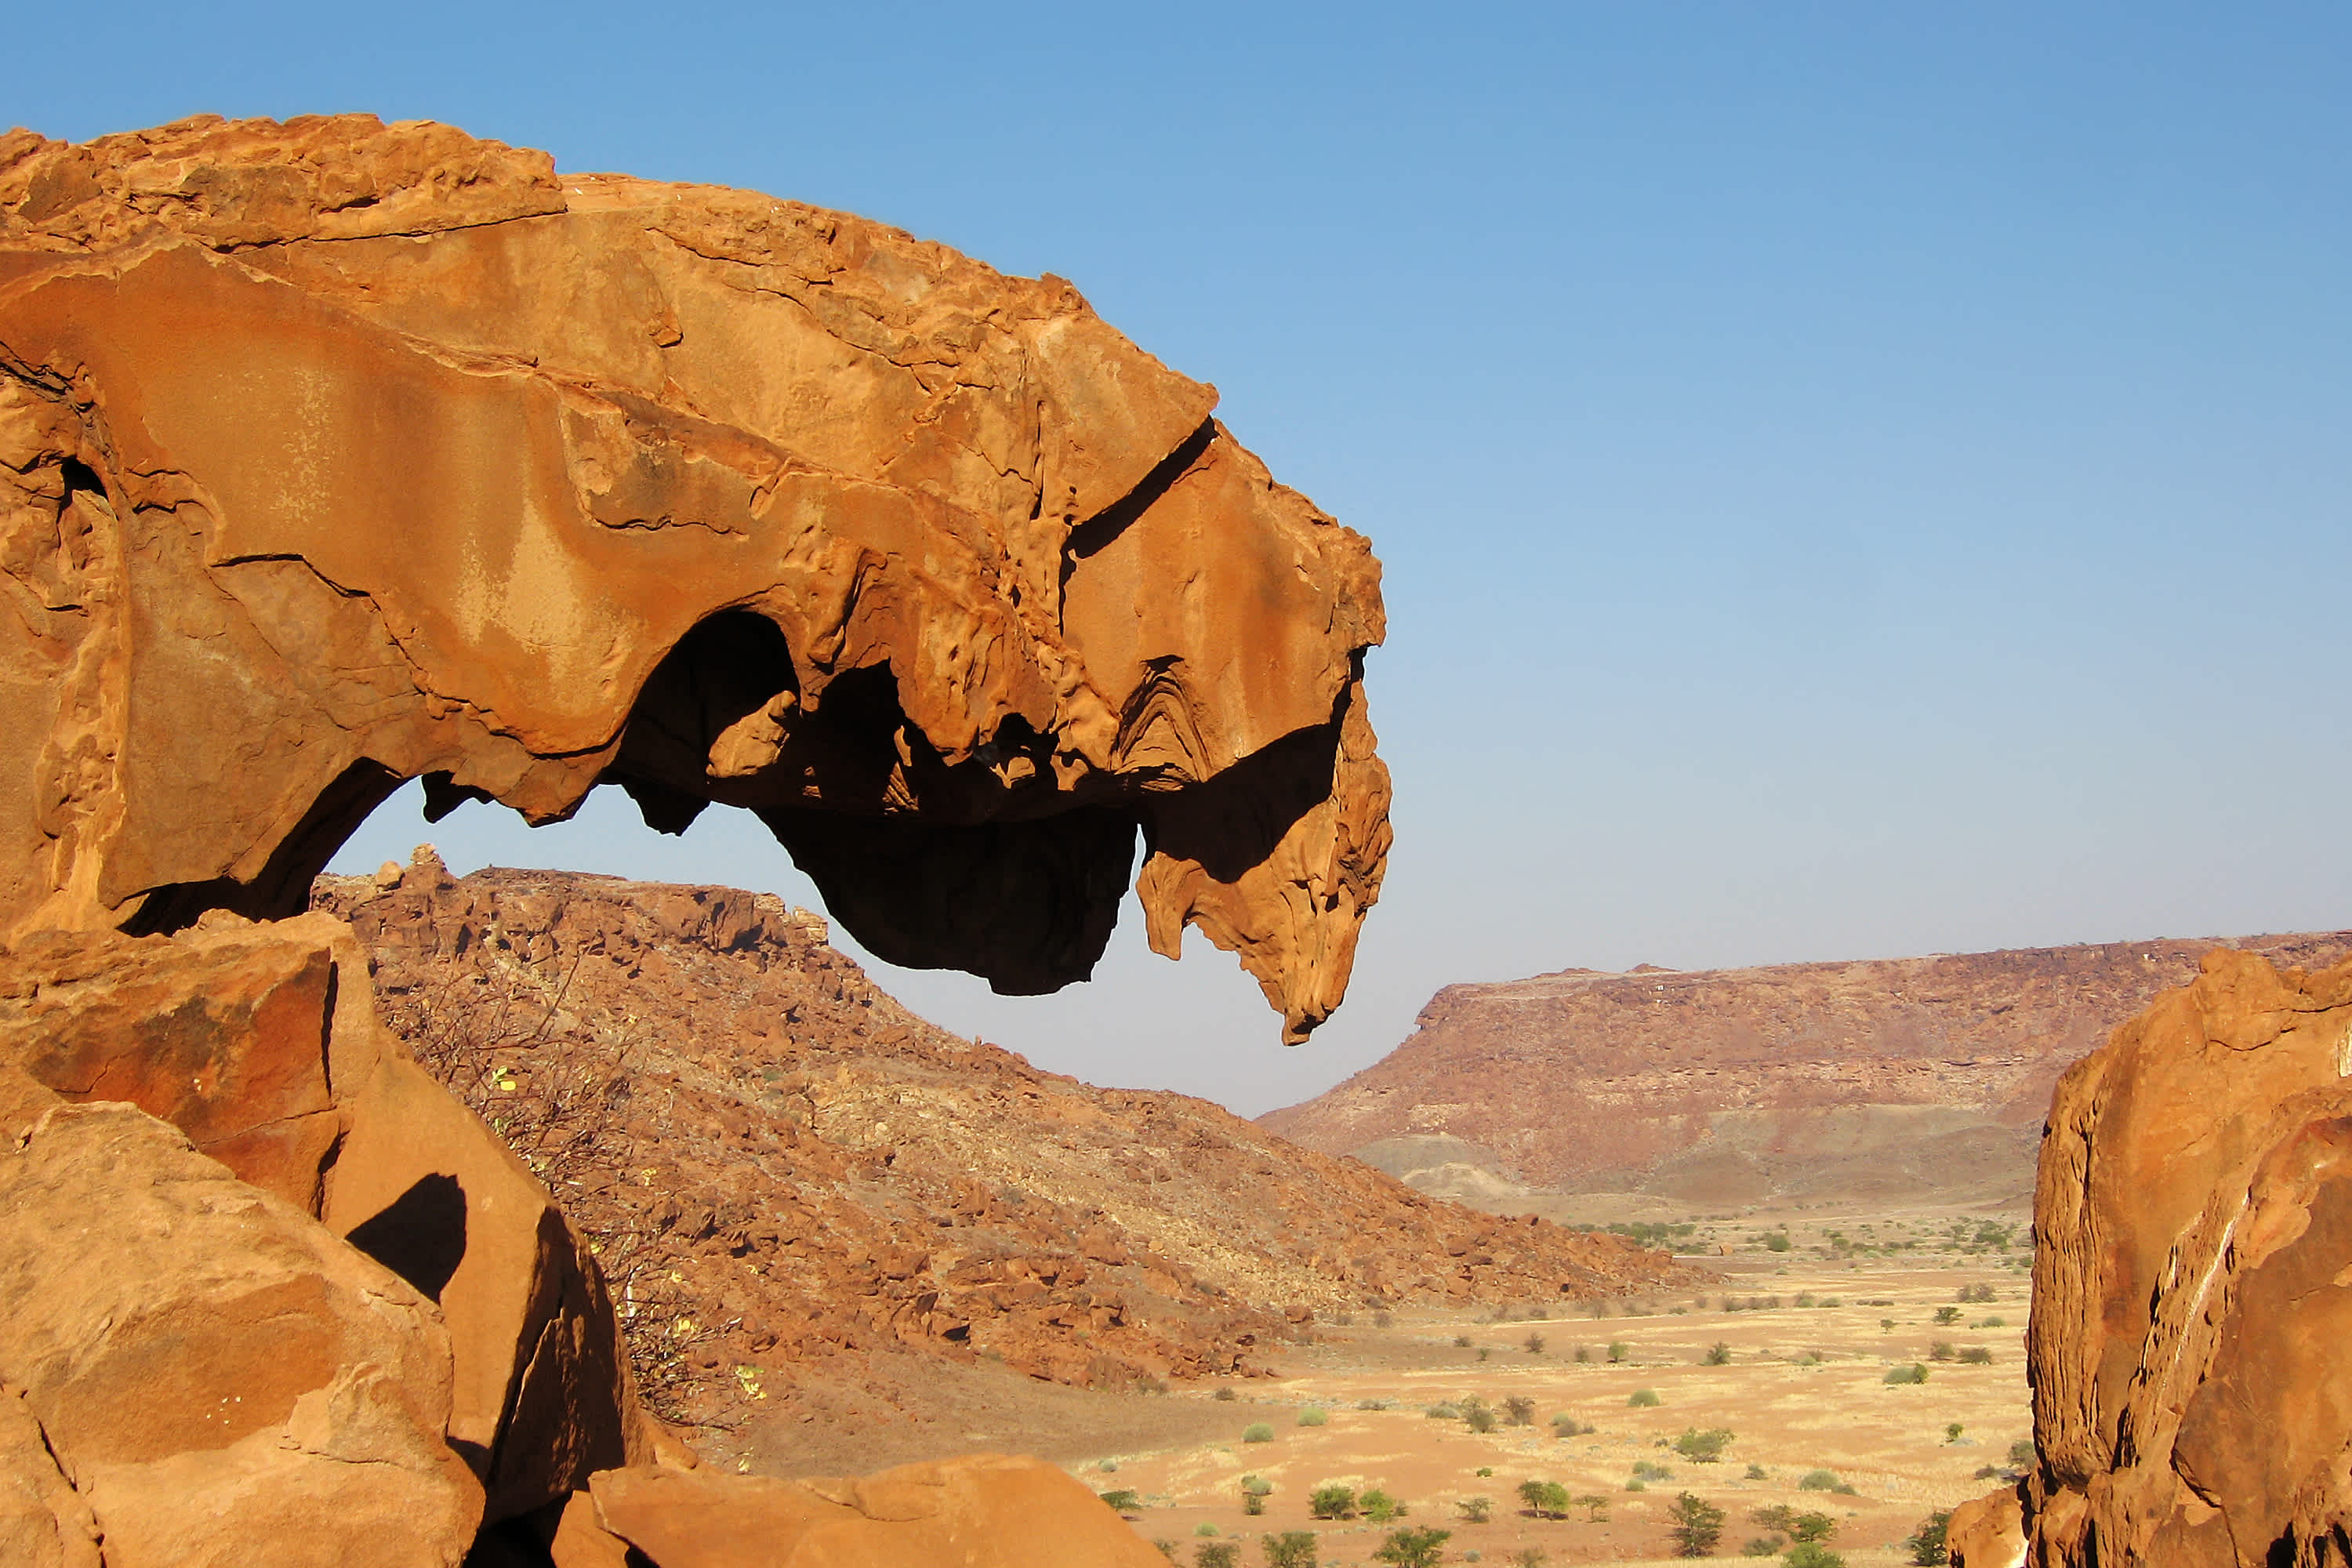 Découvrez Twyfelfontein pendant votre voyage en Namibie, un site archéologique célèbre du pays dans lequel vous pourrez admirer une formation rocheuse appelée la « bouche du lion »